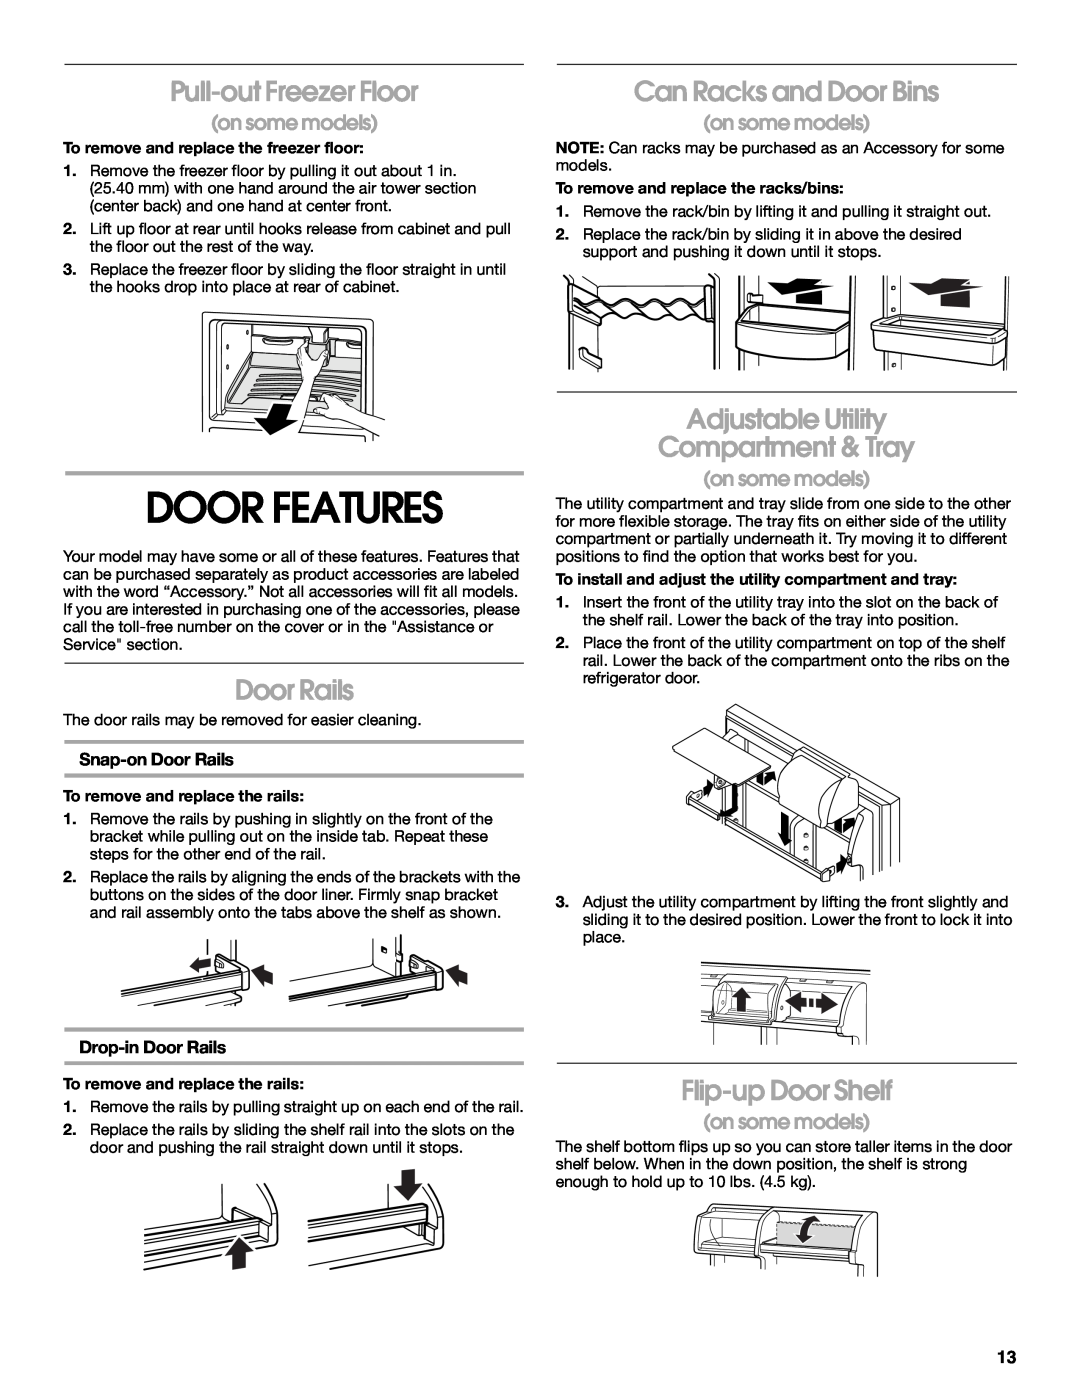 Whirlpool ST18PKXJW00 manual Door Features, Pull-out Freezer Floor, Can Racks and Door Bins, Door Rails, Flip-up Door Shelf 